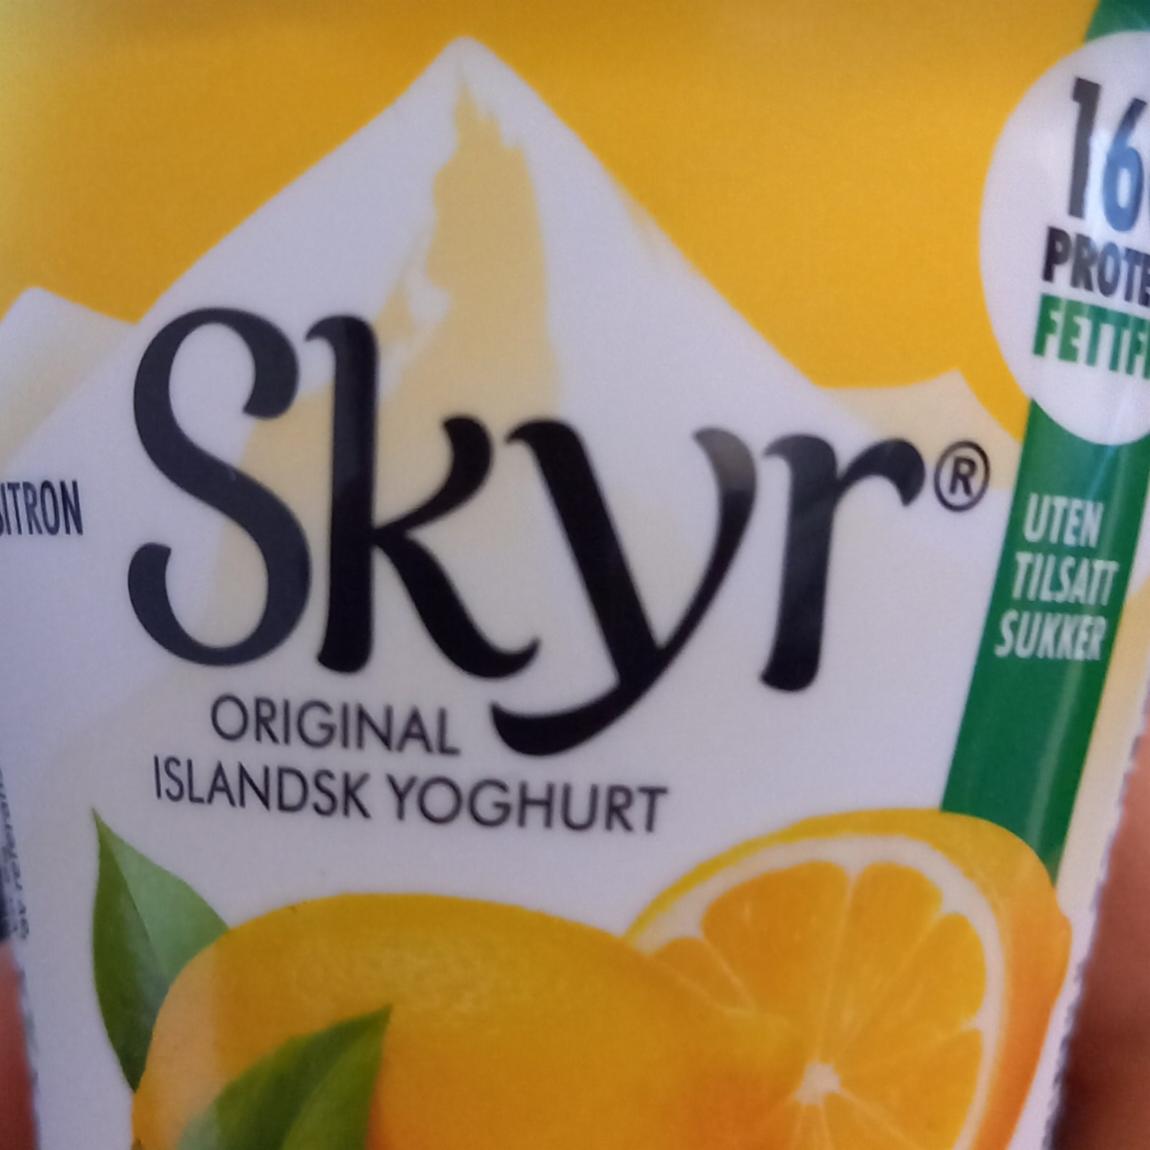 Фото - Original islandsk yoghurt Sitron Q Skyr